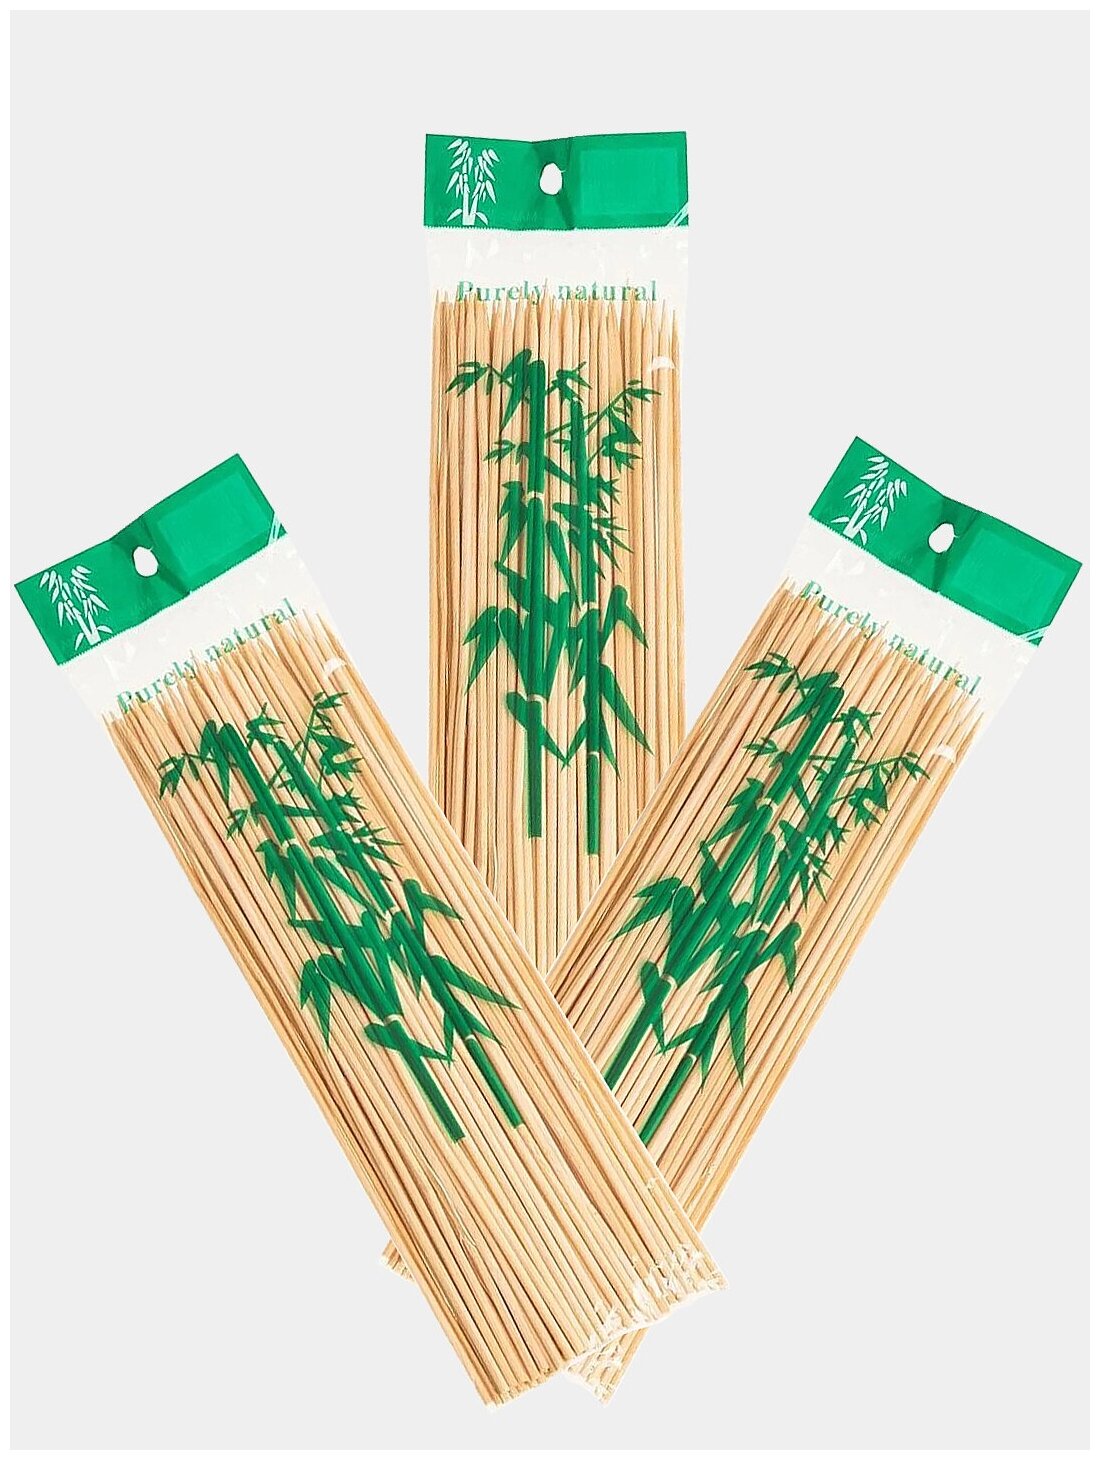 Шпажки-шампуры деревянные (бамбуковые) для шашлыка, для канапе, 3 набора по 75 шт., всего 225 шт., 20 см. - фотография № 1